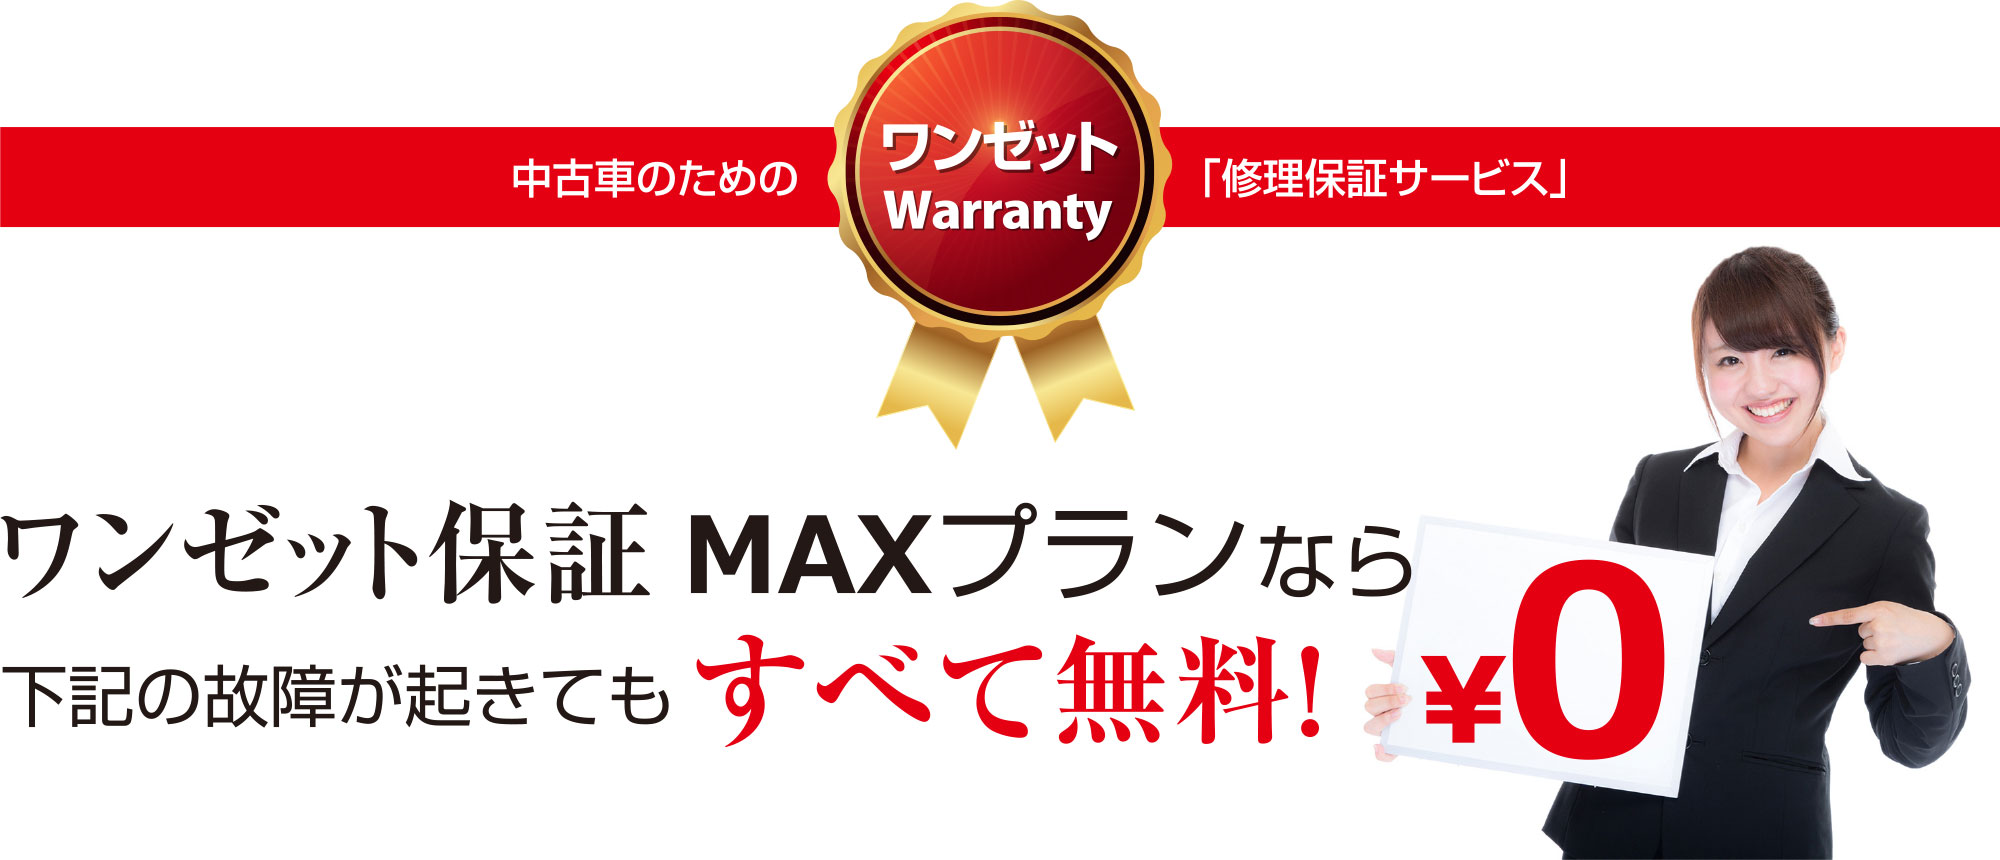 ワンゼット保証 MAXプランらな下記の故障が起きてもすべて無料